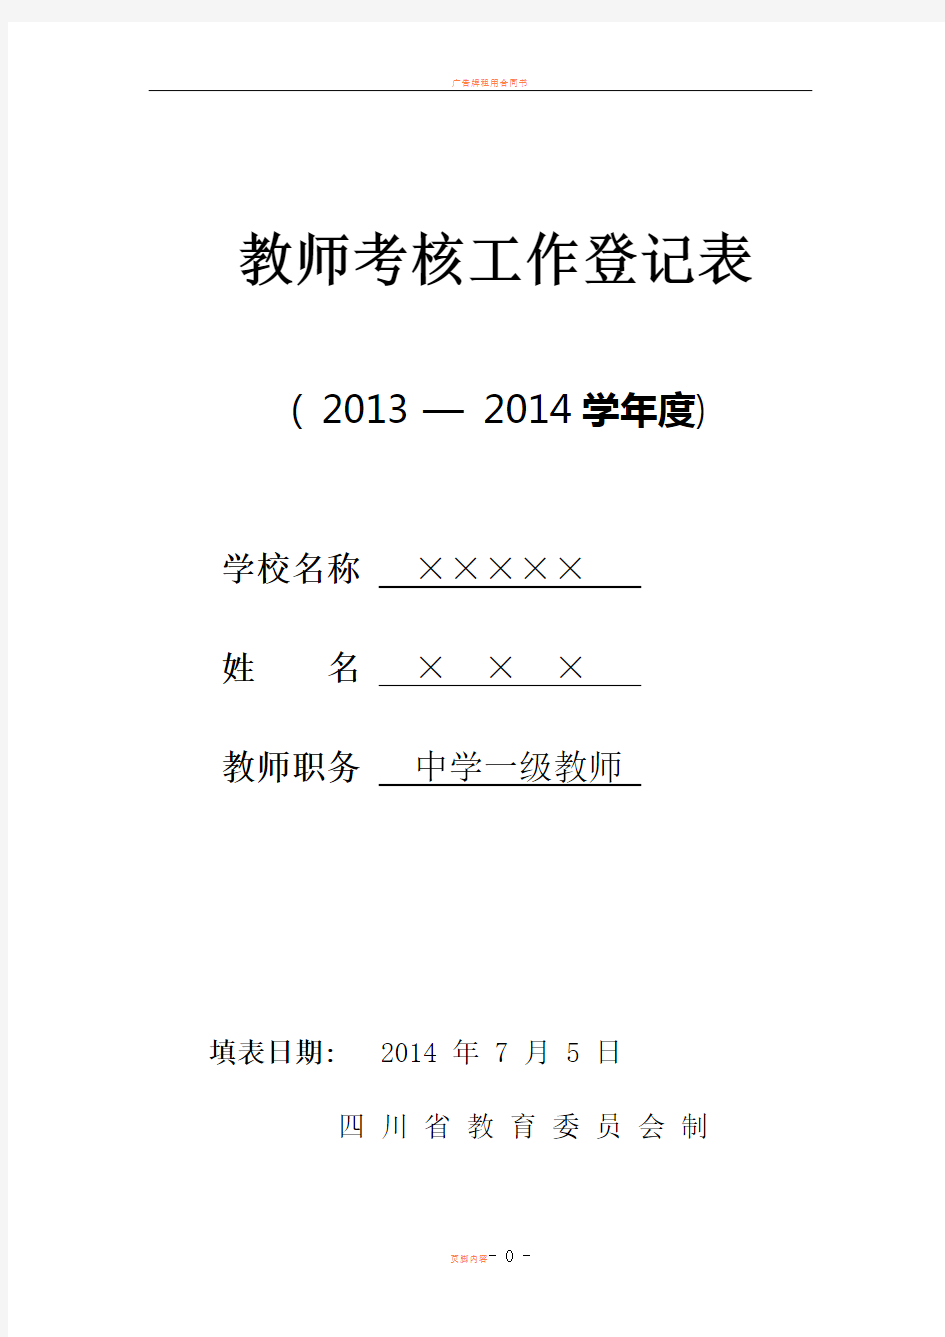 2014年教师年度考核表填写模板